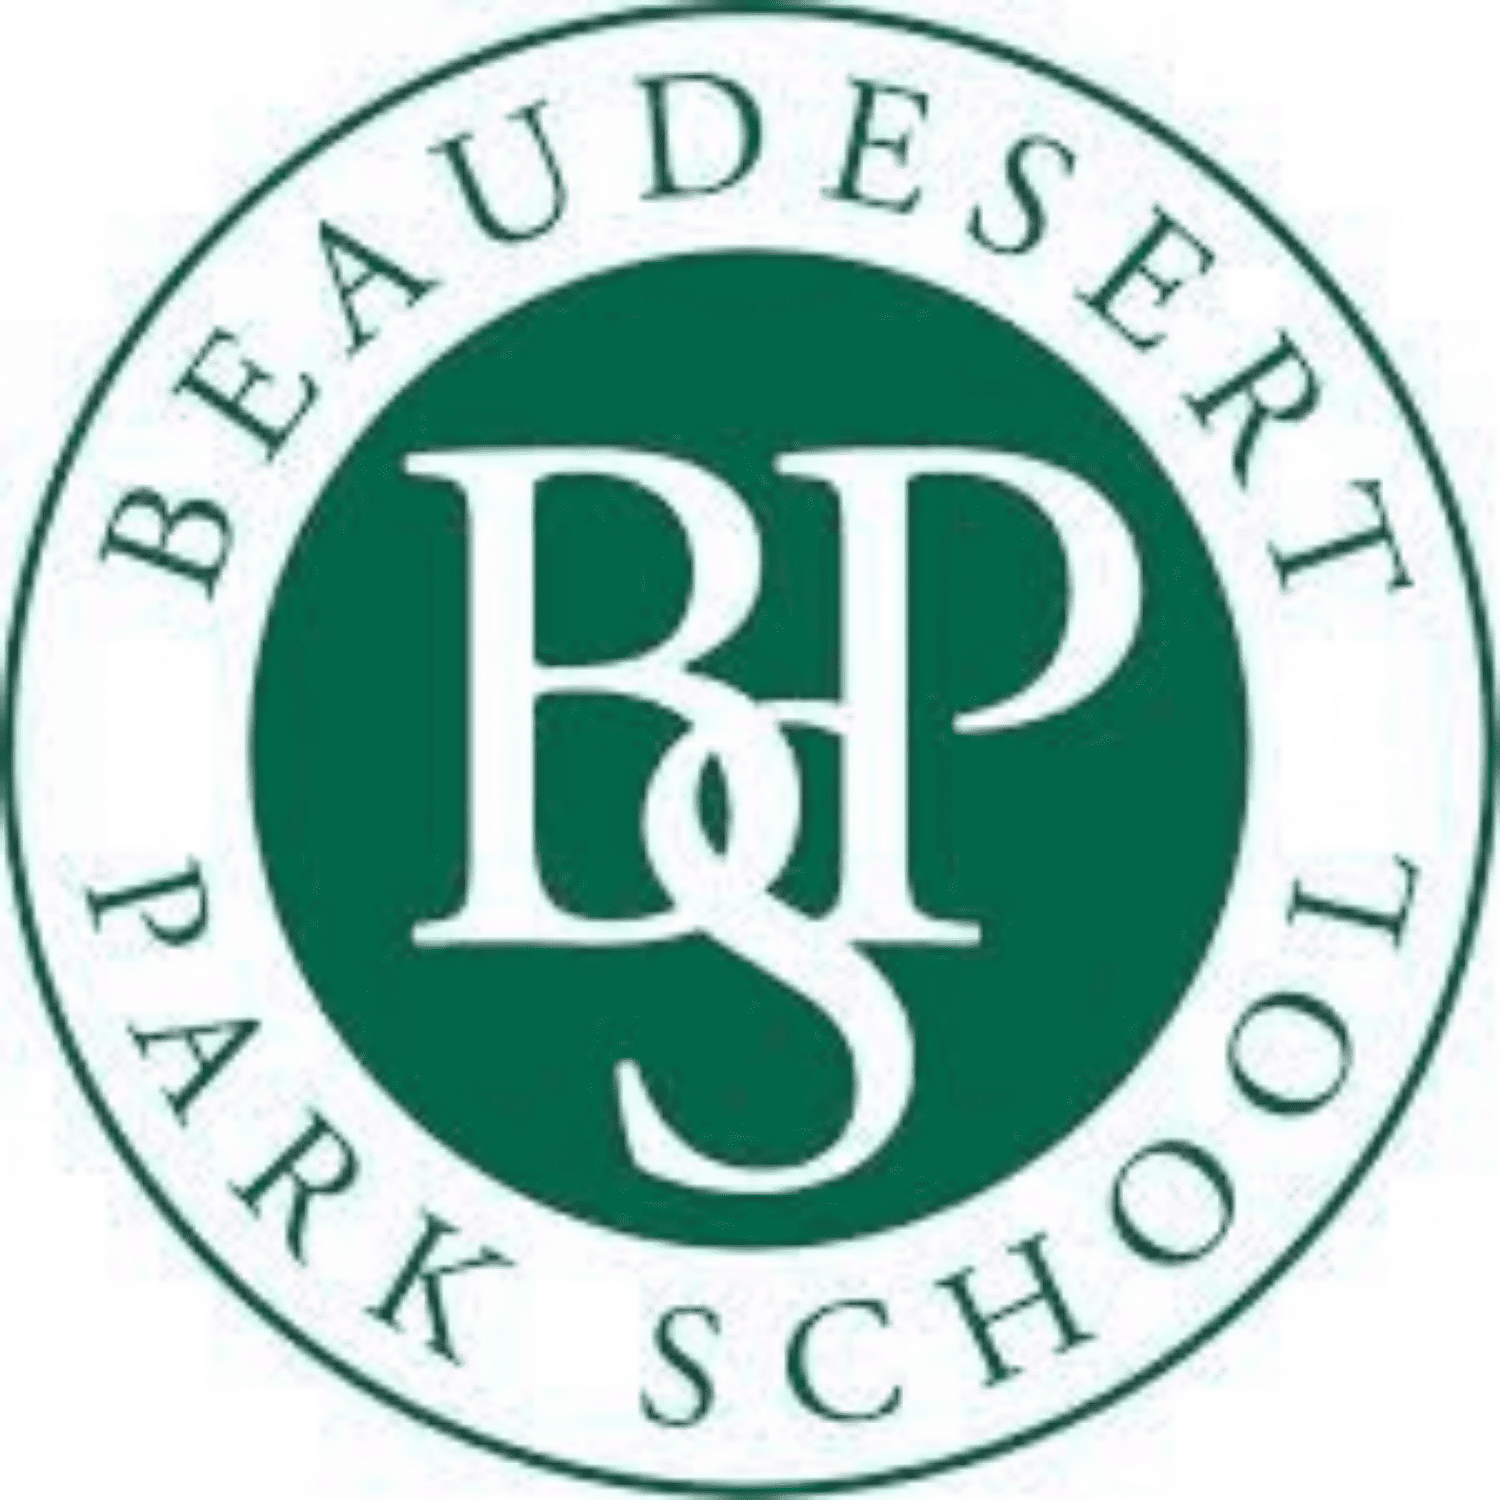 Beaudsert Park School